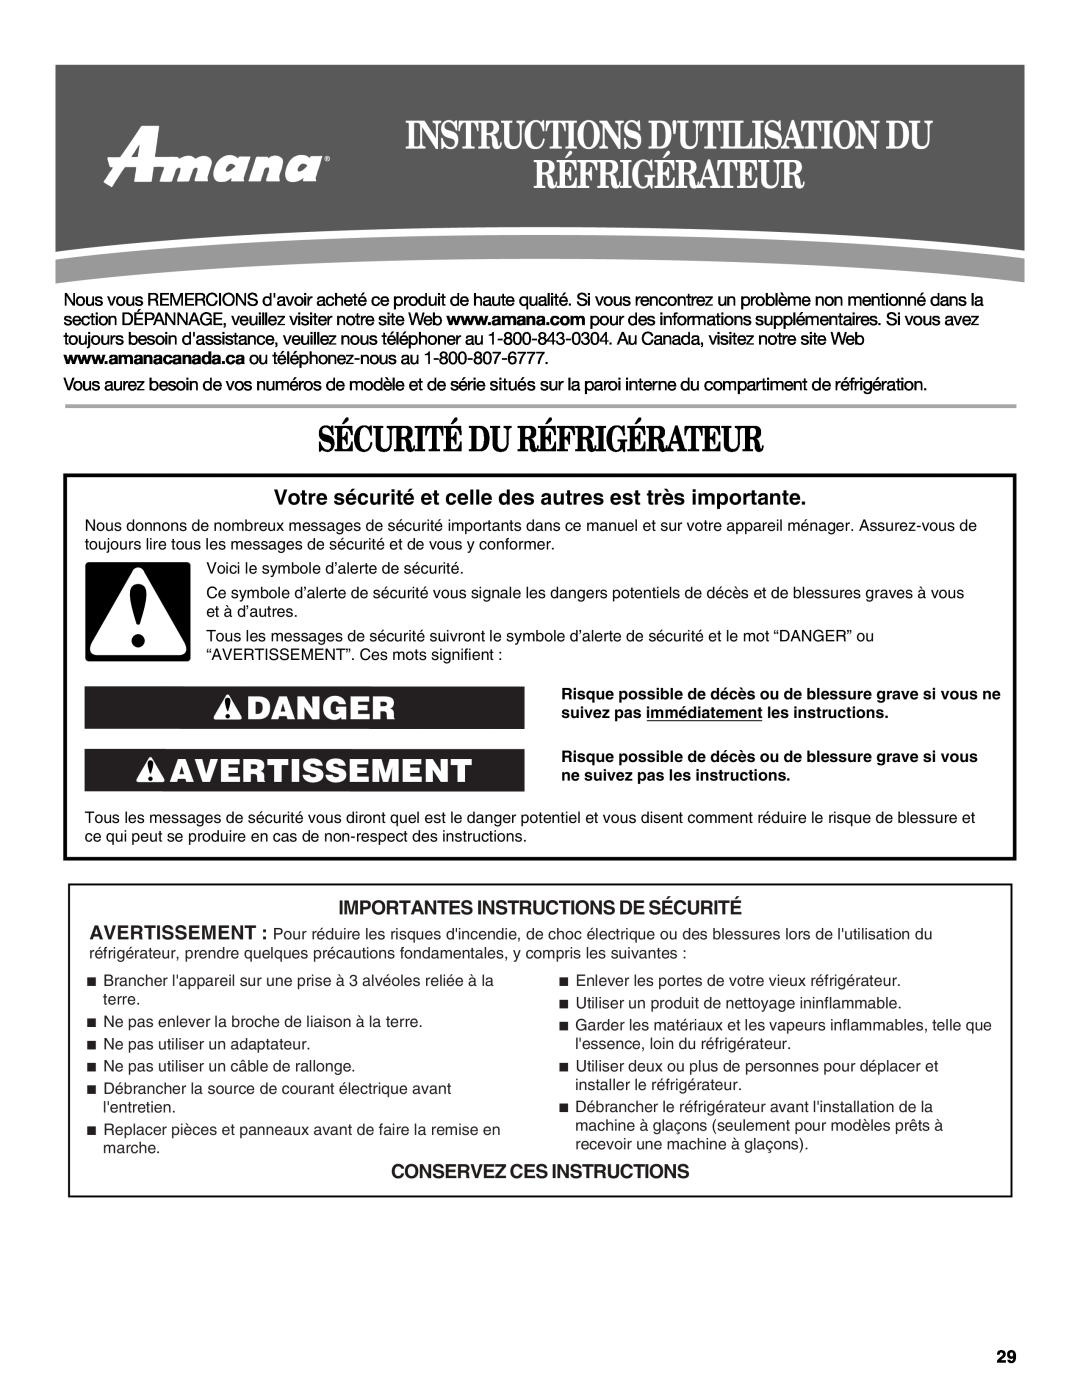 Amana W10214254A Instructions Dutilisation Du Réfrigérateur, Sécurité Du Réfrigérateur, Danger Avertissement 